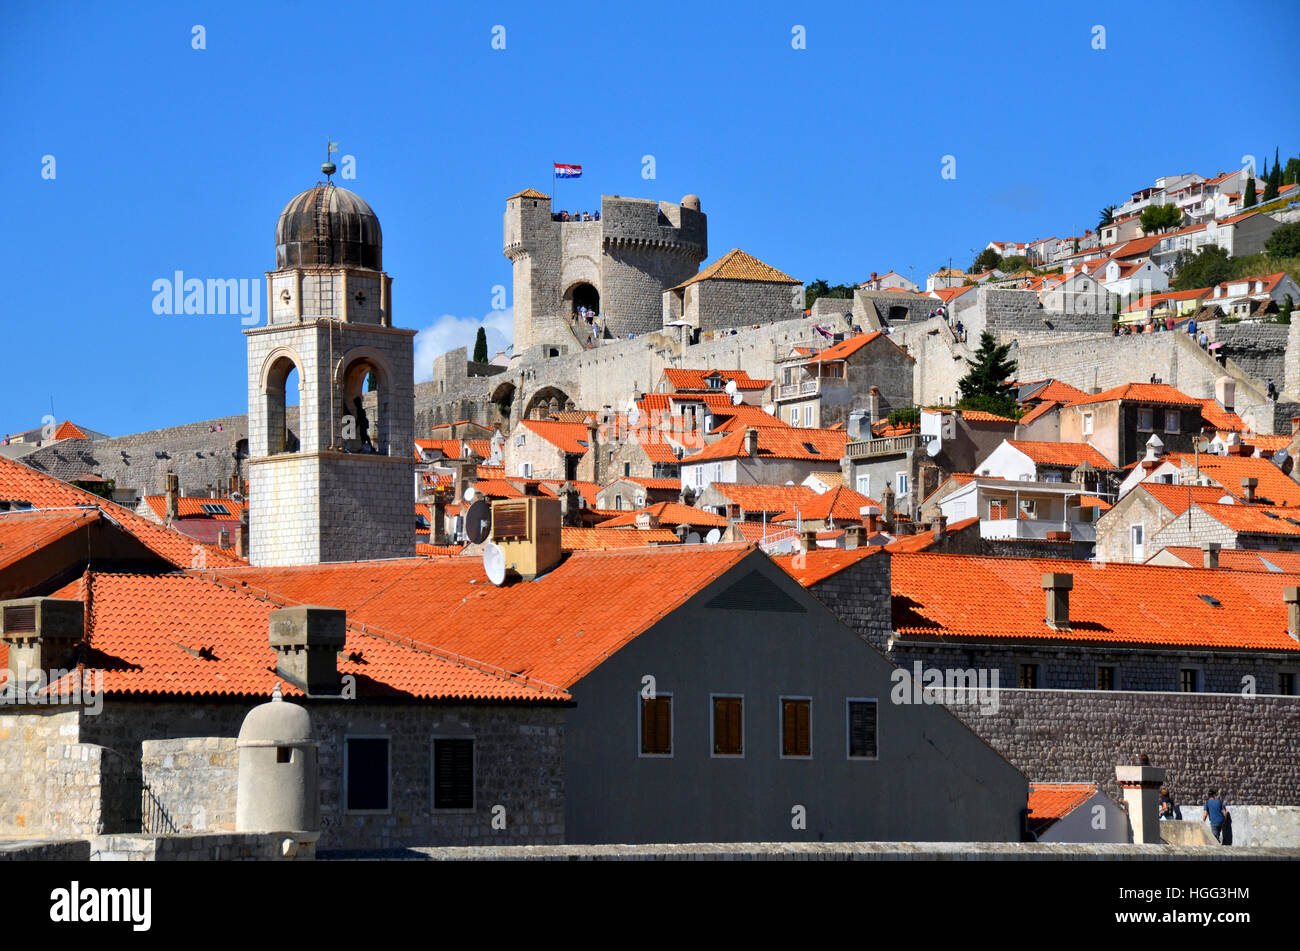 Tetto di tegole rosse e cime della città di Dubrovnik, Croazia, inclusa la città il campanile e la torre Minceta. Foto Stock